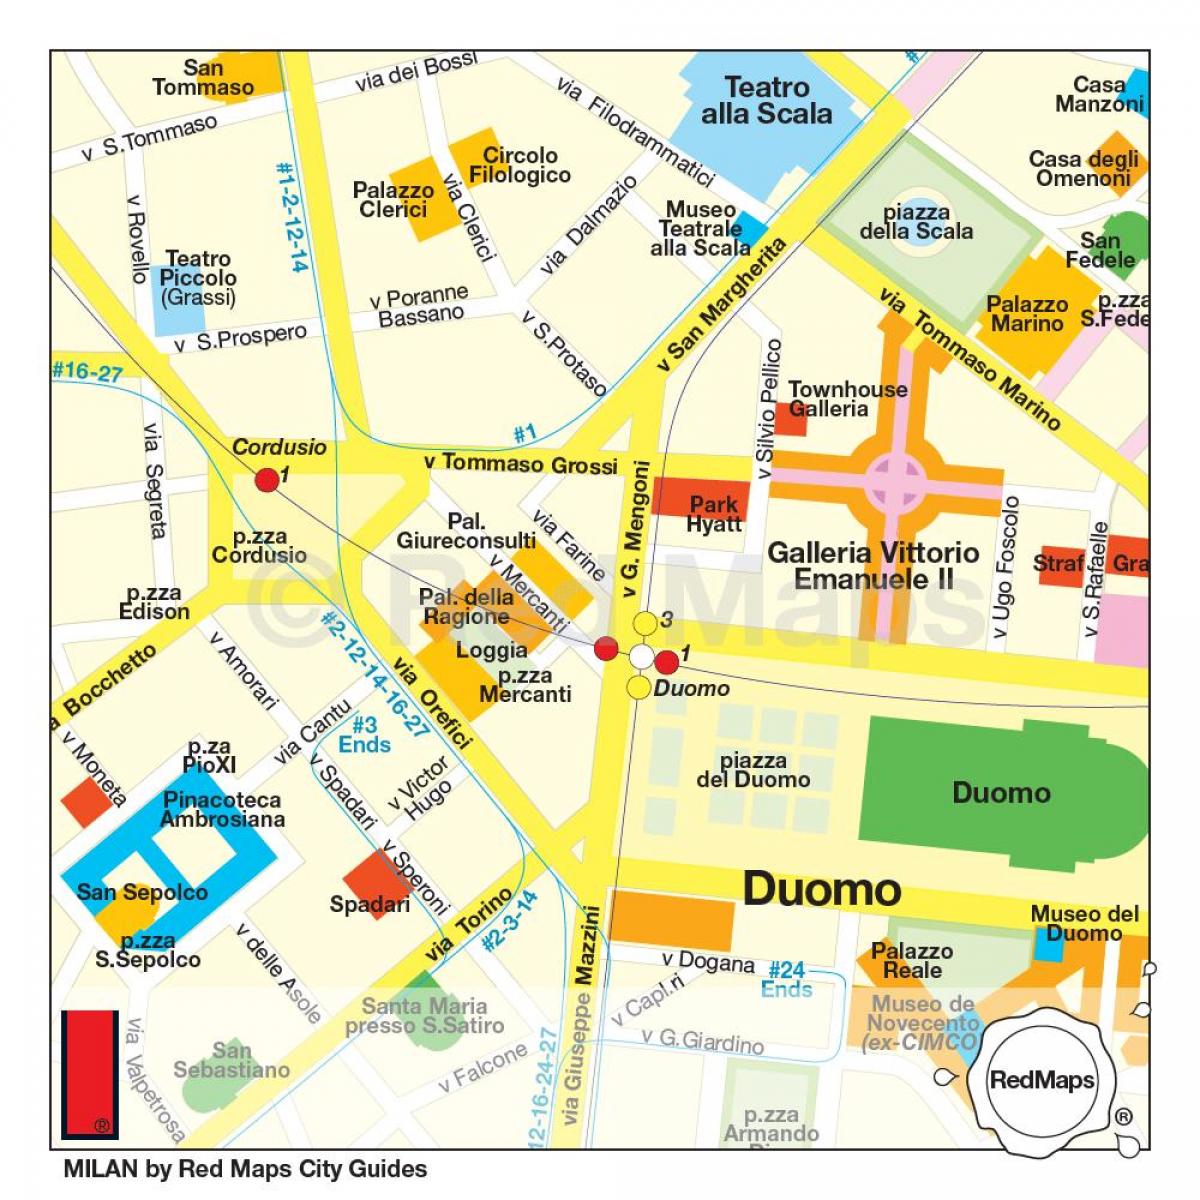 Karte von Mailand shopping street